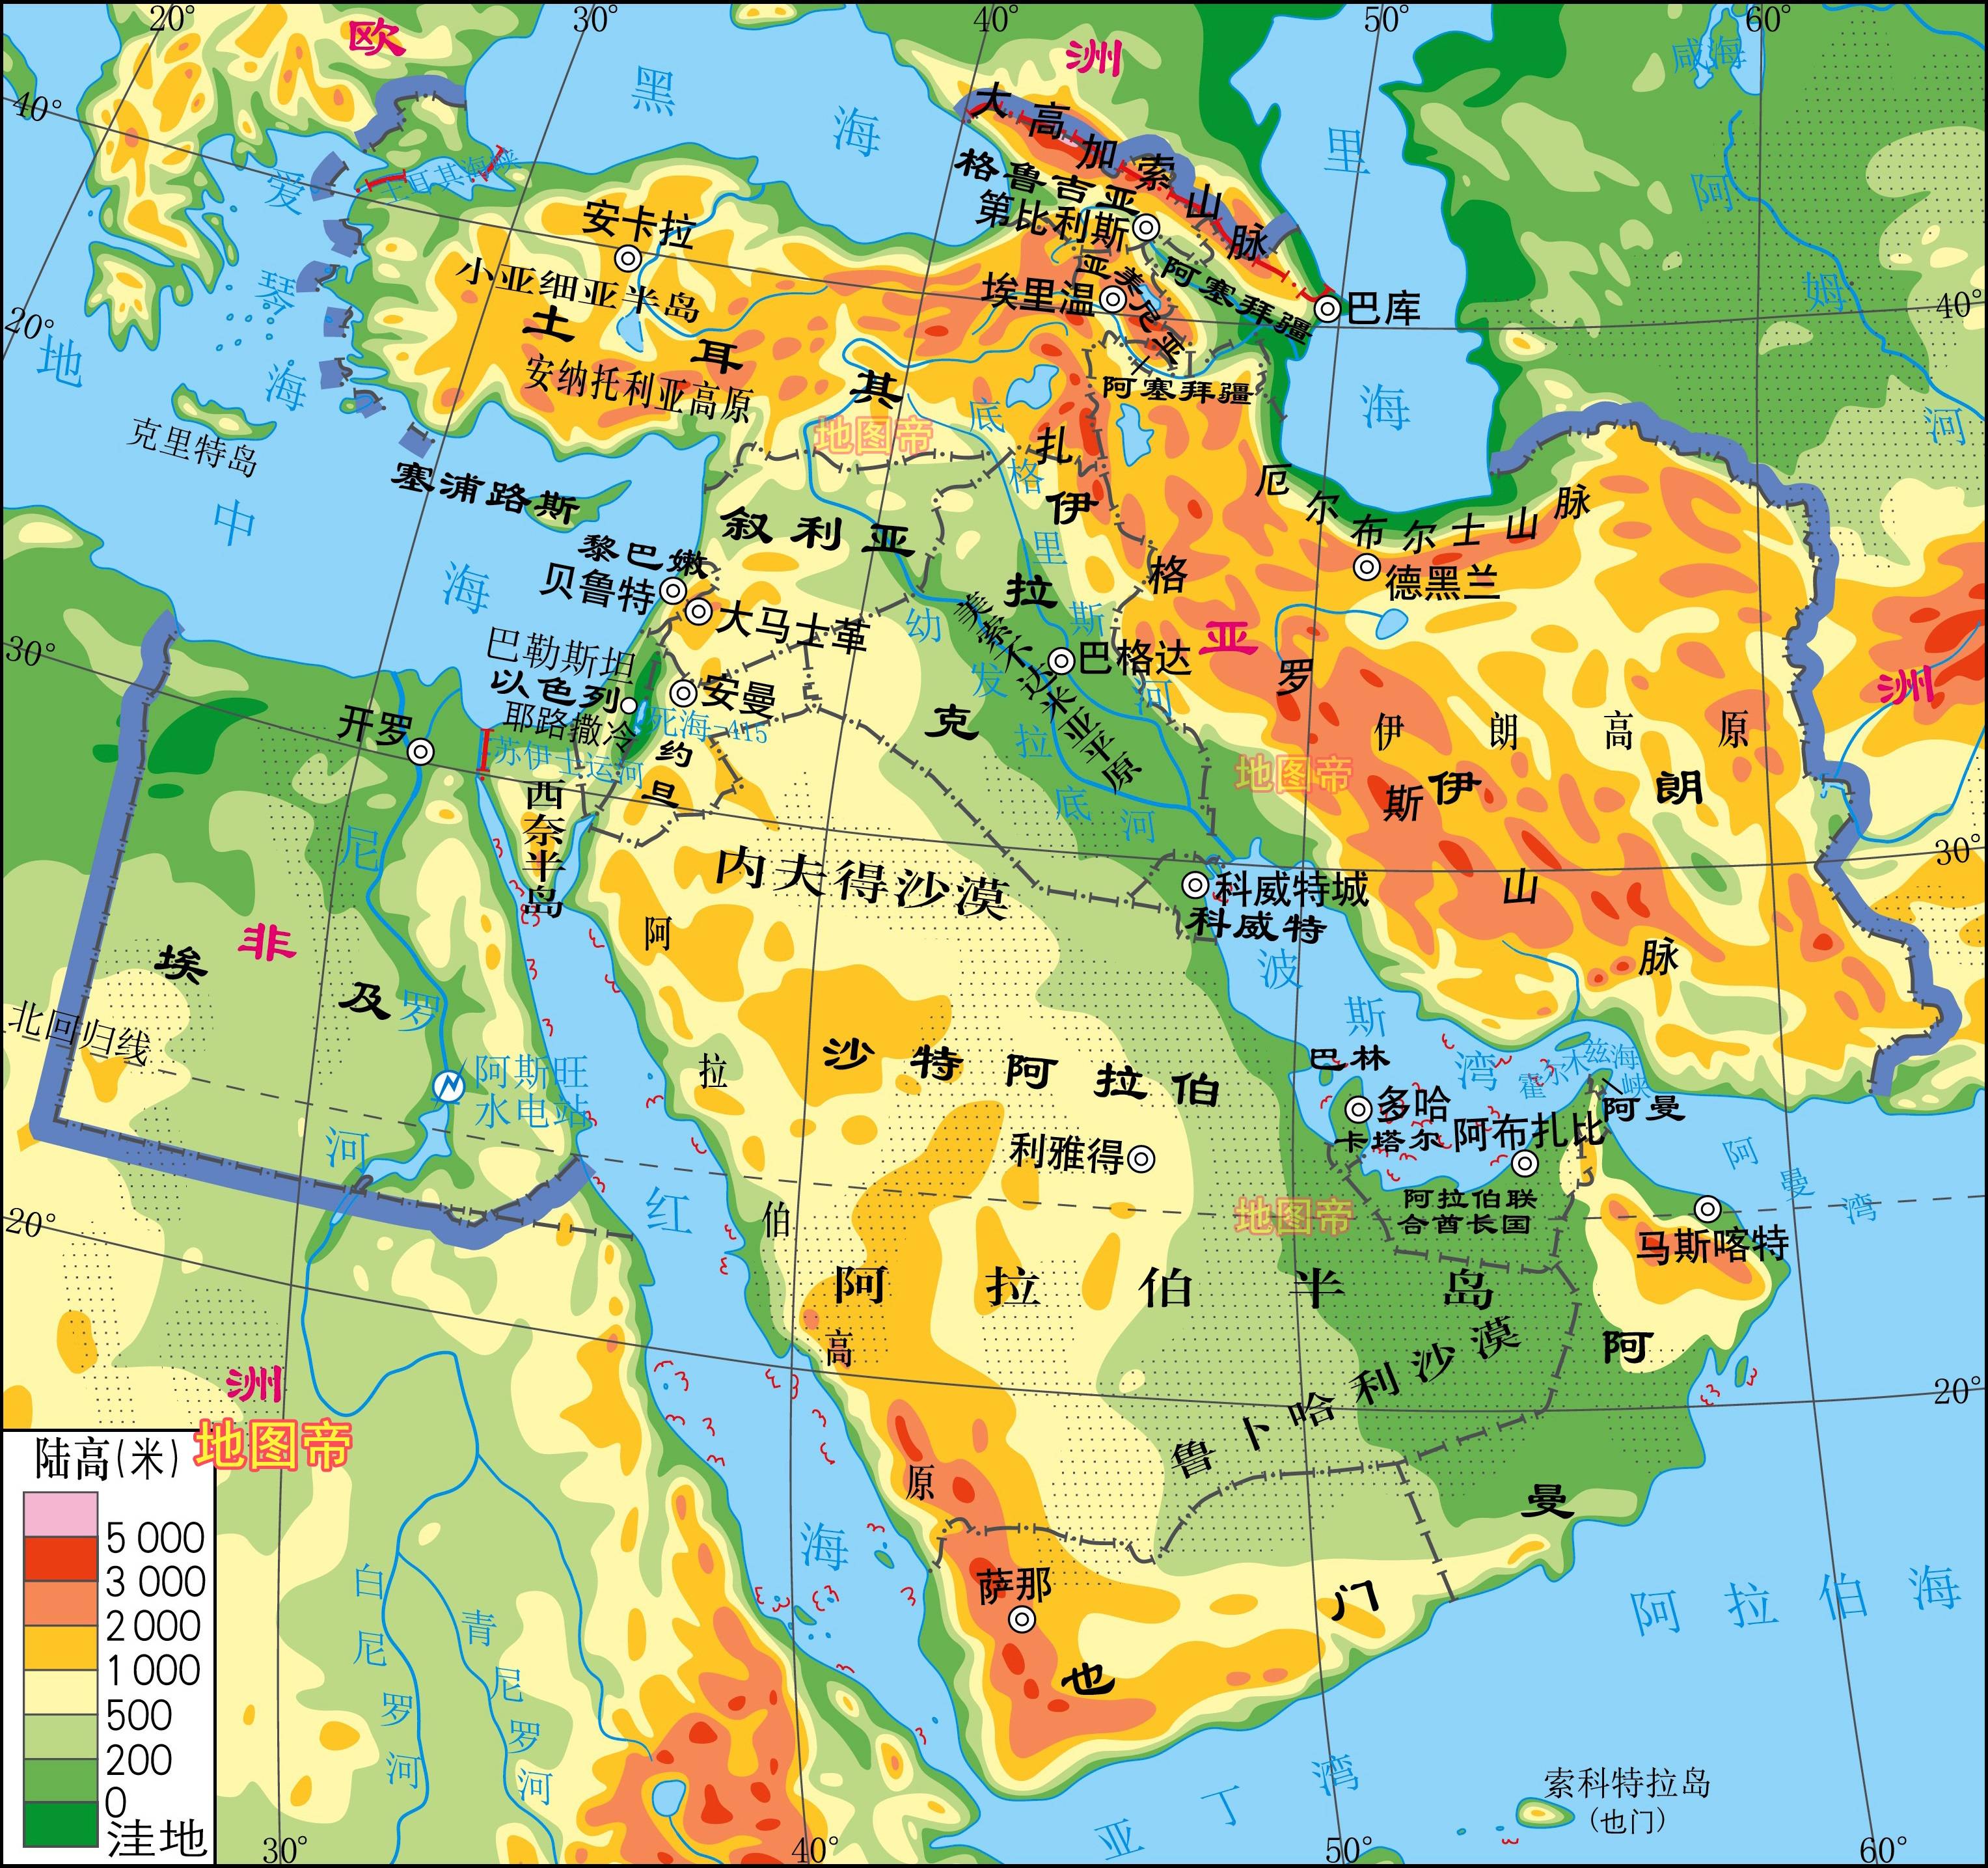 【地理中心】沙特位于阿拉伯半岛中间地带,东濒波斯湾,西临红海